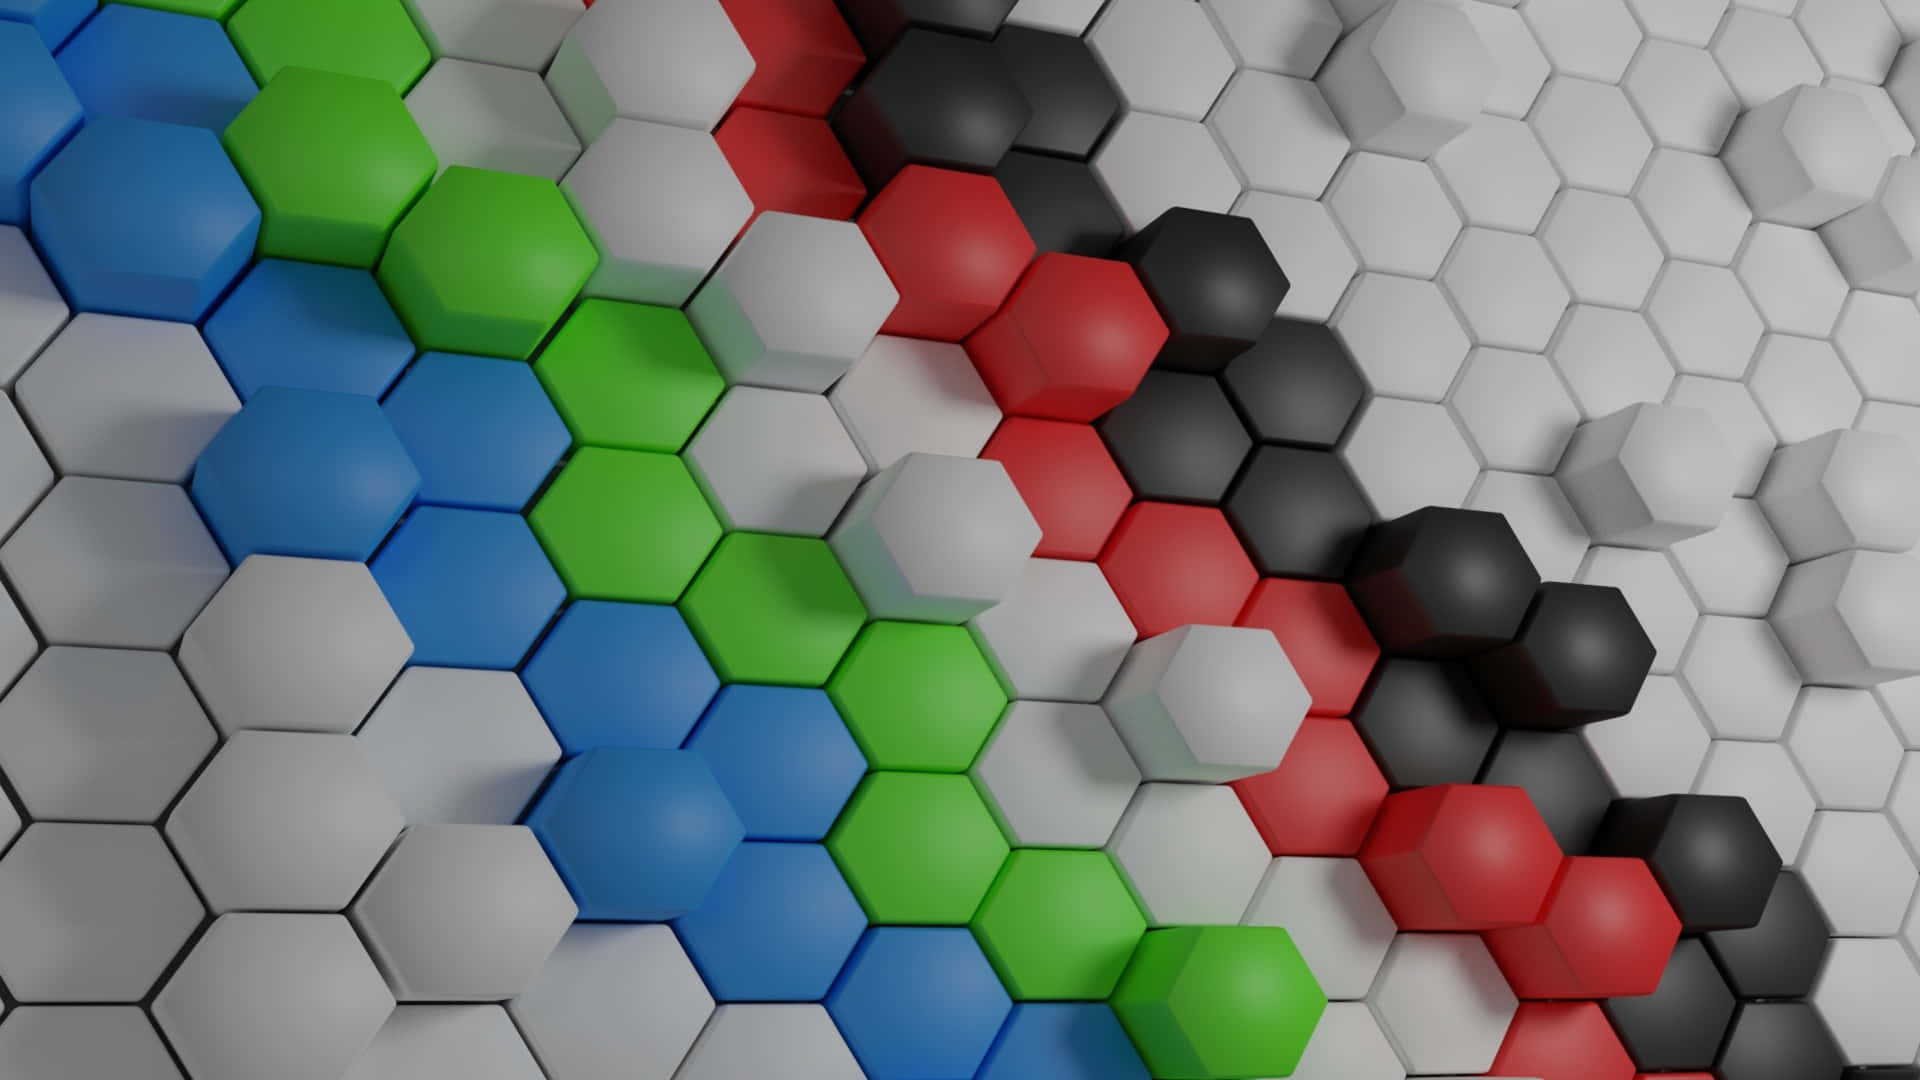 Vislumbrede Un Patrón Hexagonal Infinito Fondo de pantalla